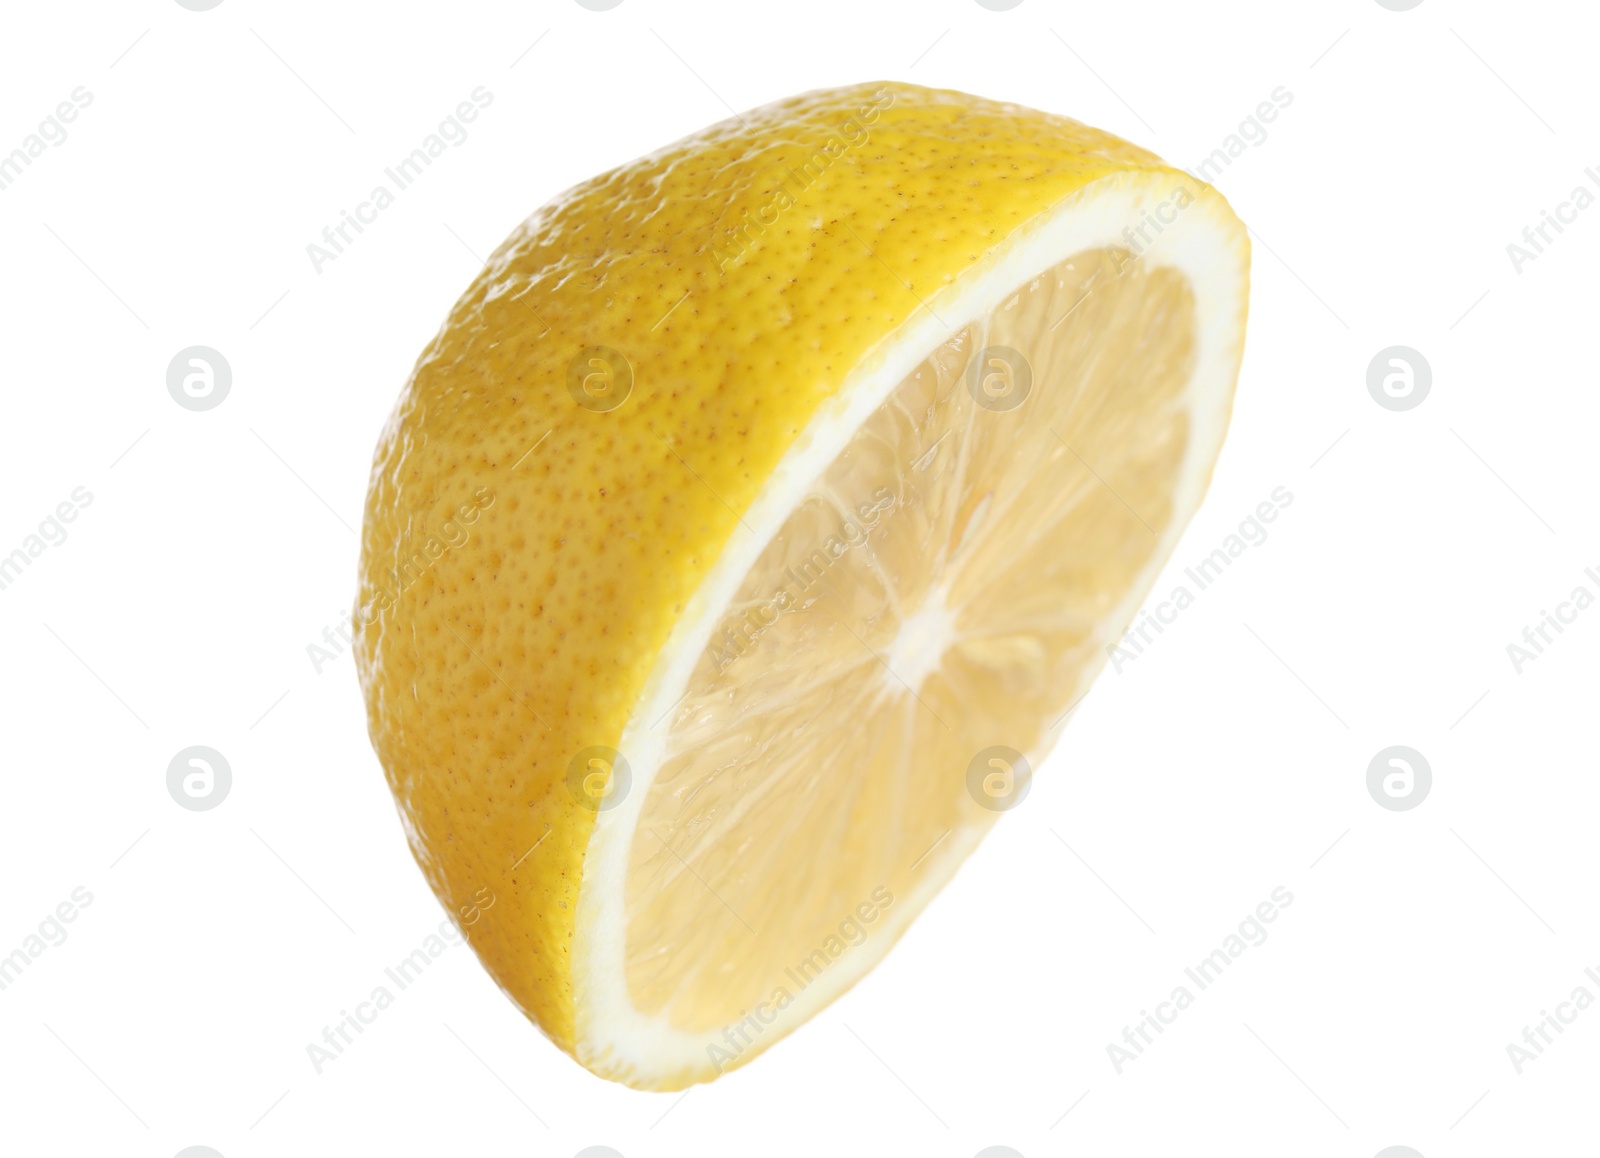 Photo of Half of fresh lemon isolated on white